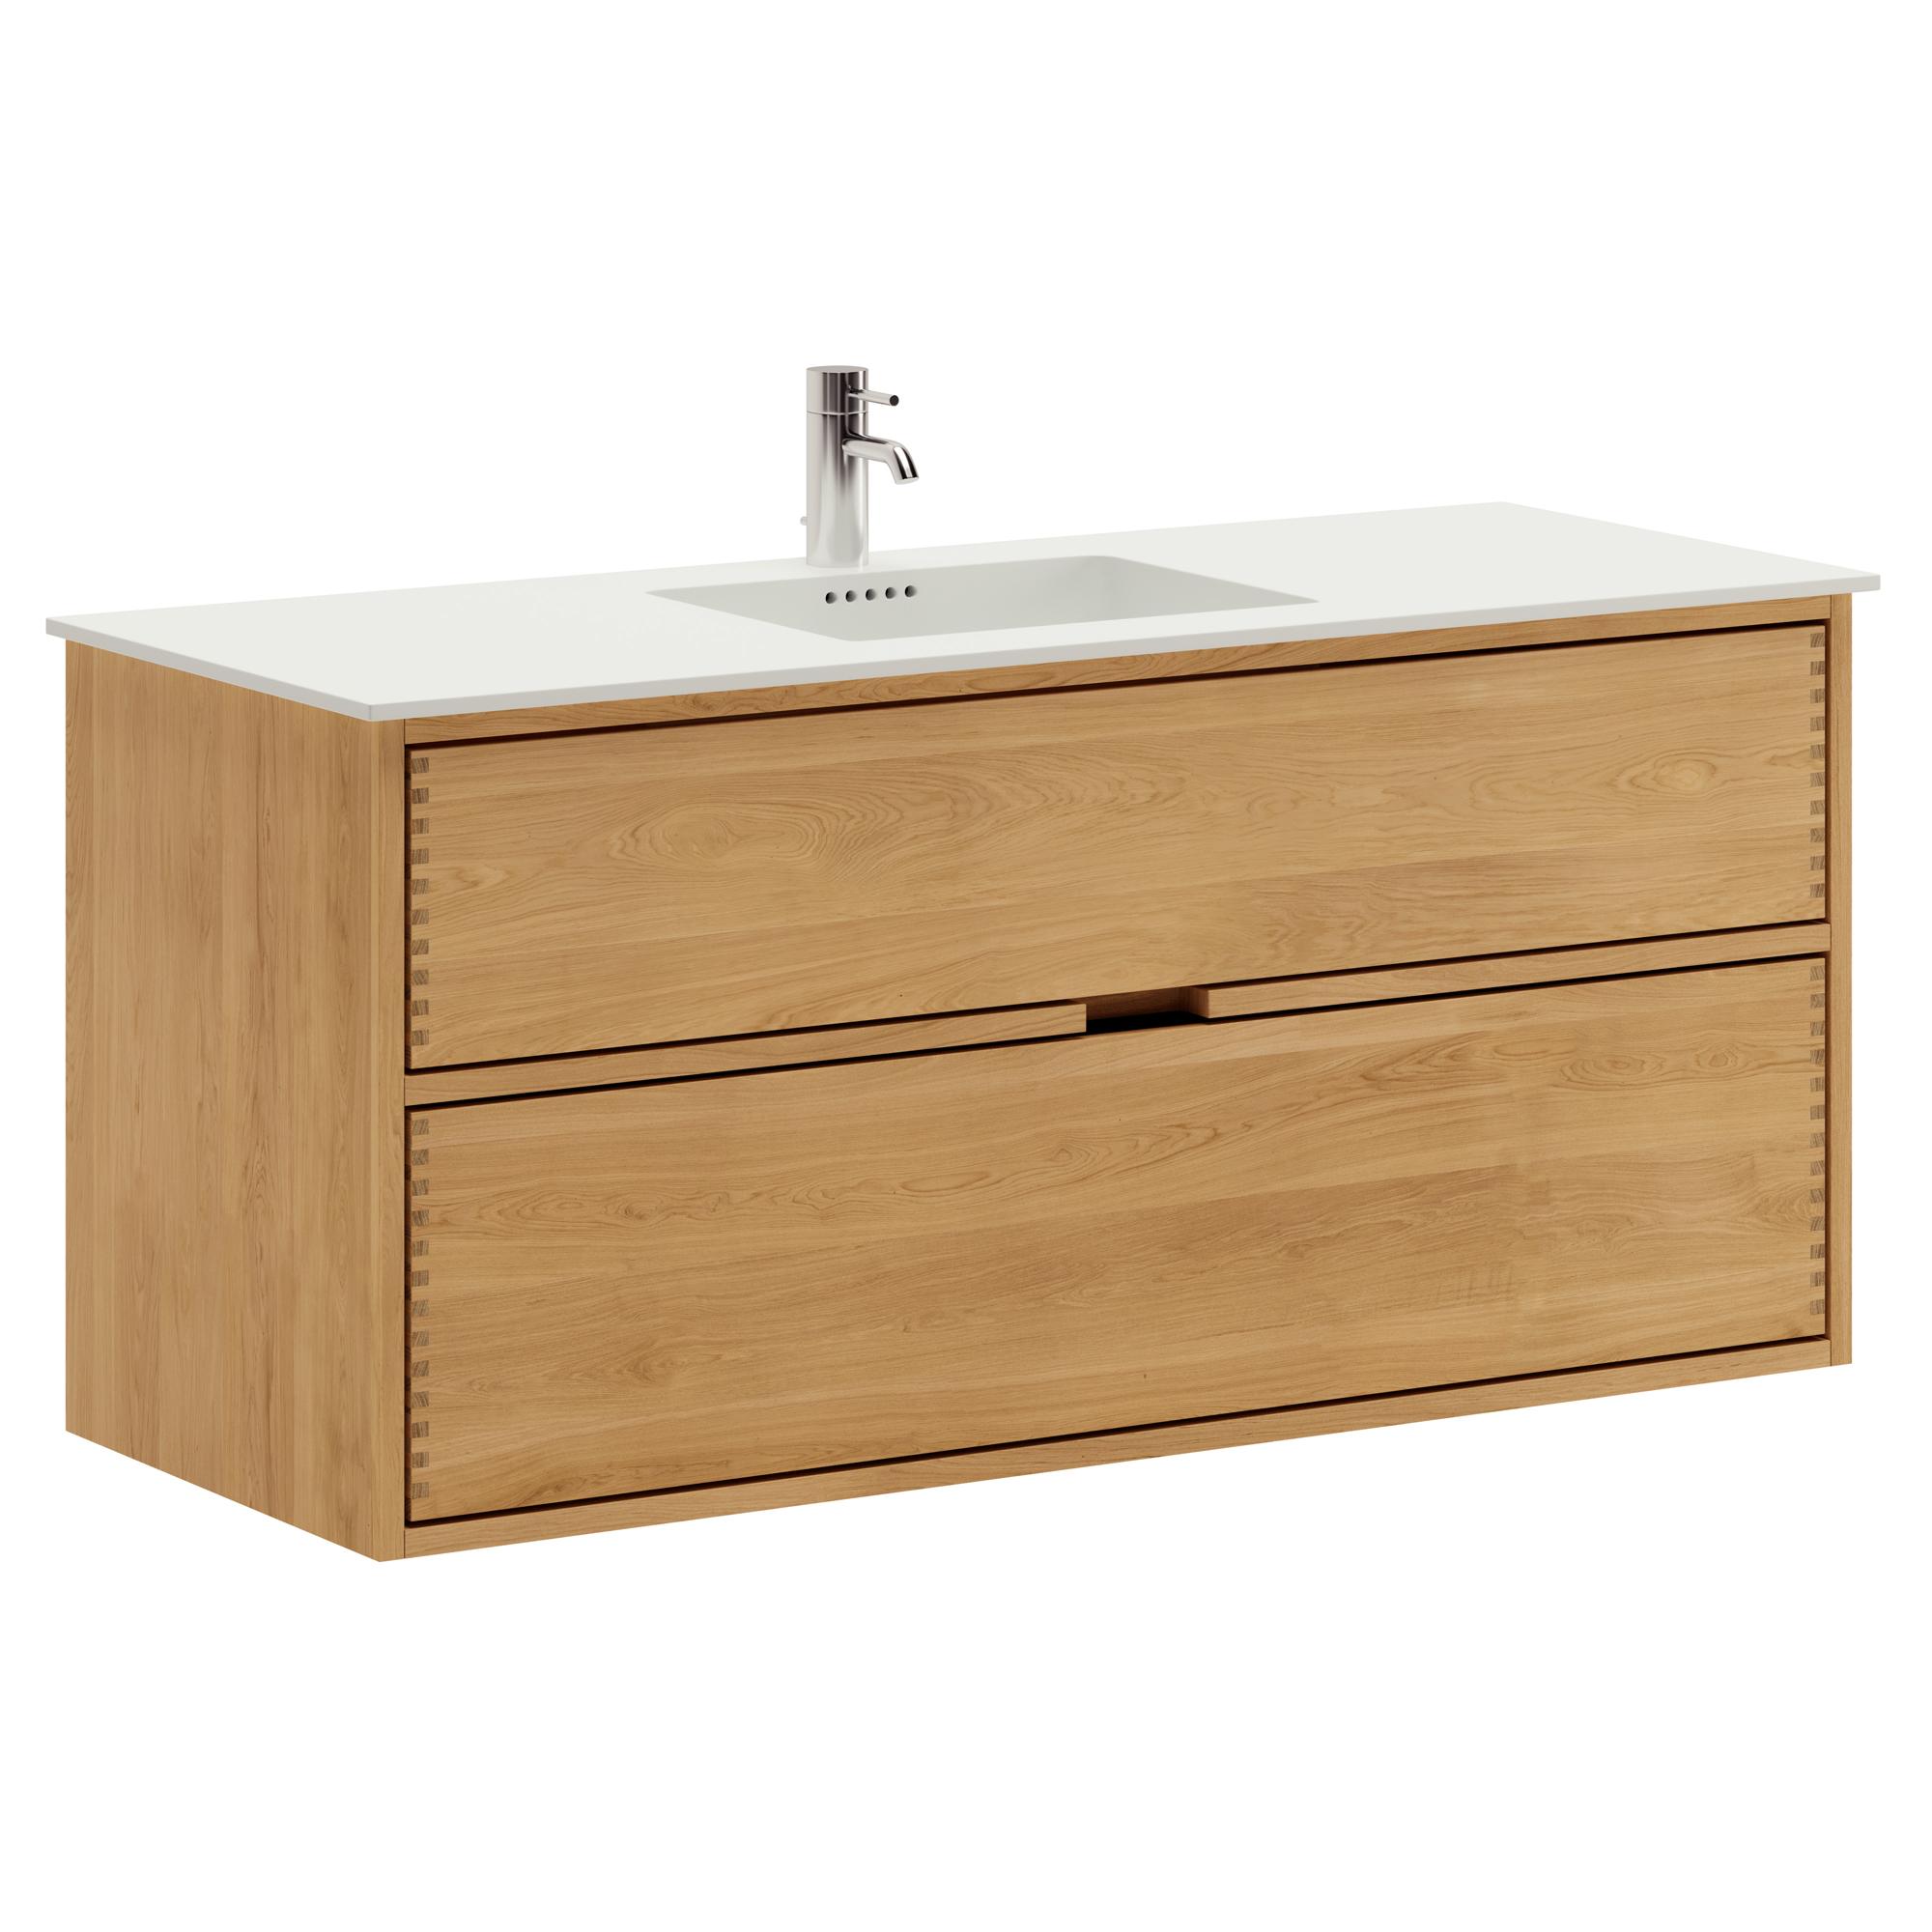 120 cm Just Wood Badezimmermöbel mit 2 Schubladen und Solid Surface-Waschbecken